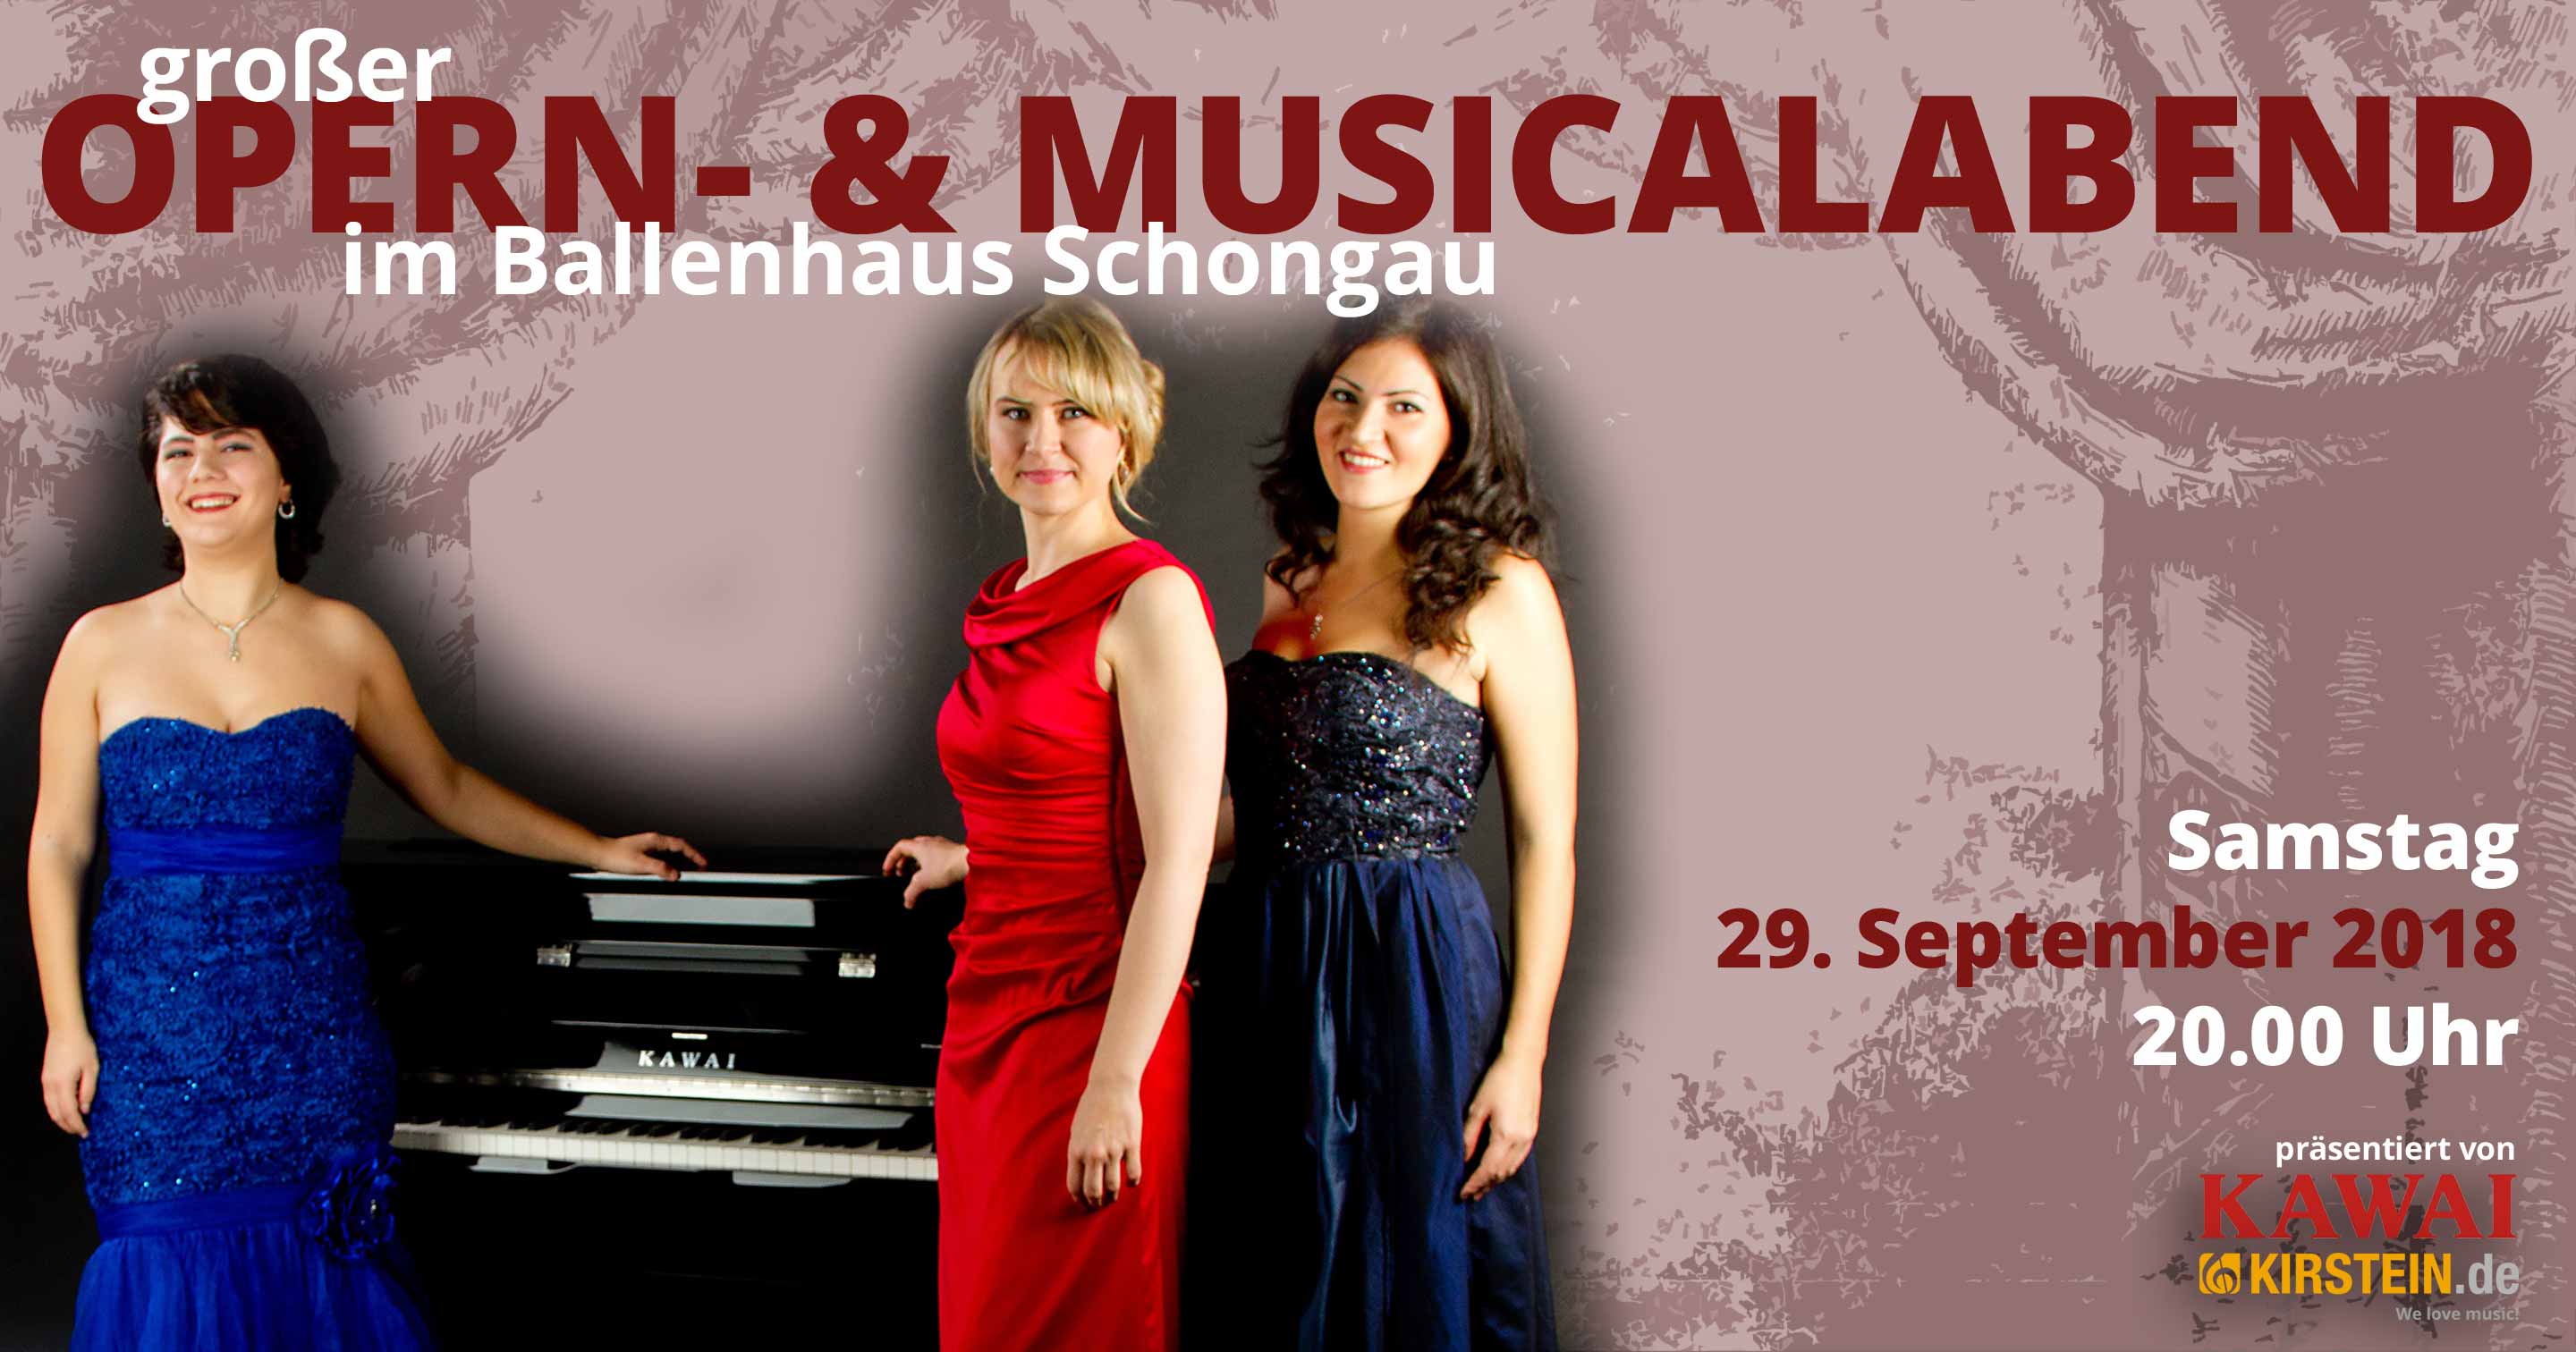 Der Opern- und Musicalabend wird am 29. September 2018 im Ballenhaus in Schongau von Kawai und dem Musikhaus Kirstein präsentiert.